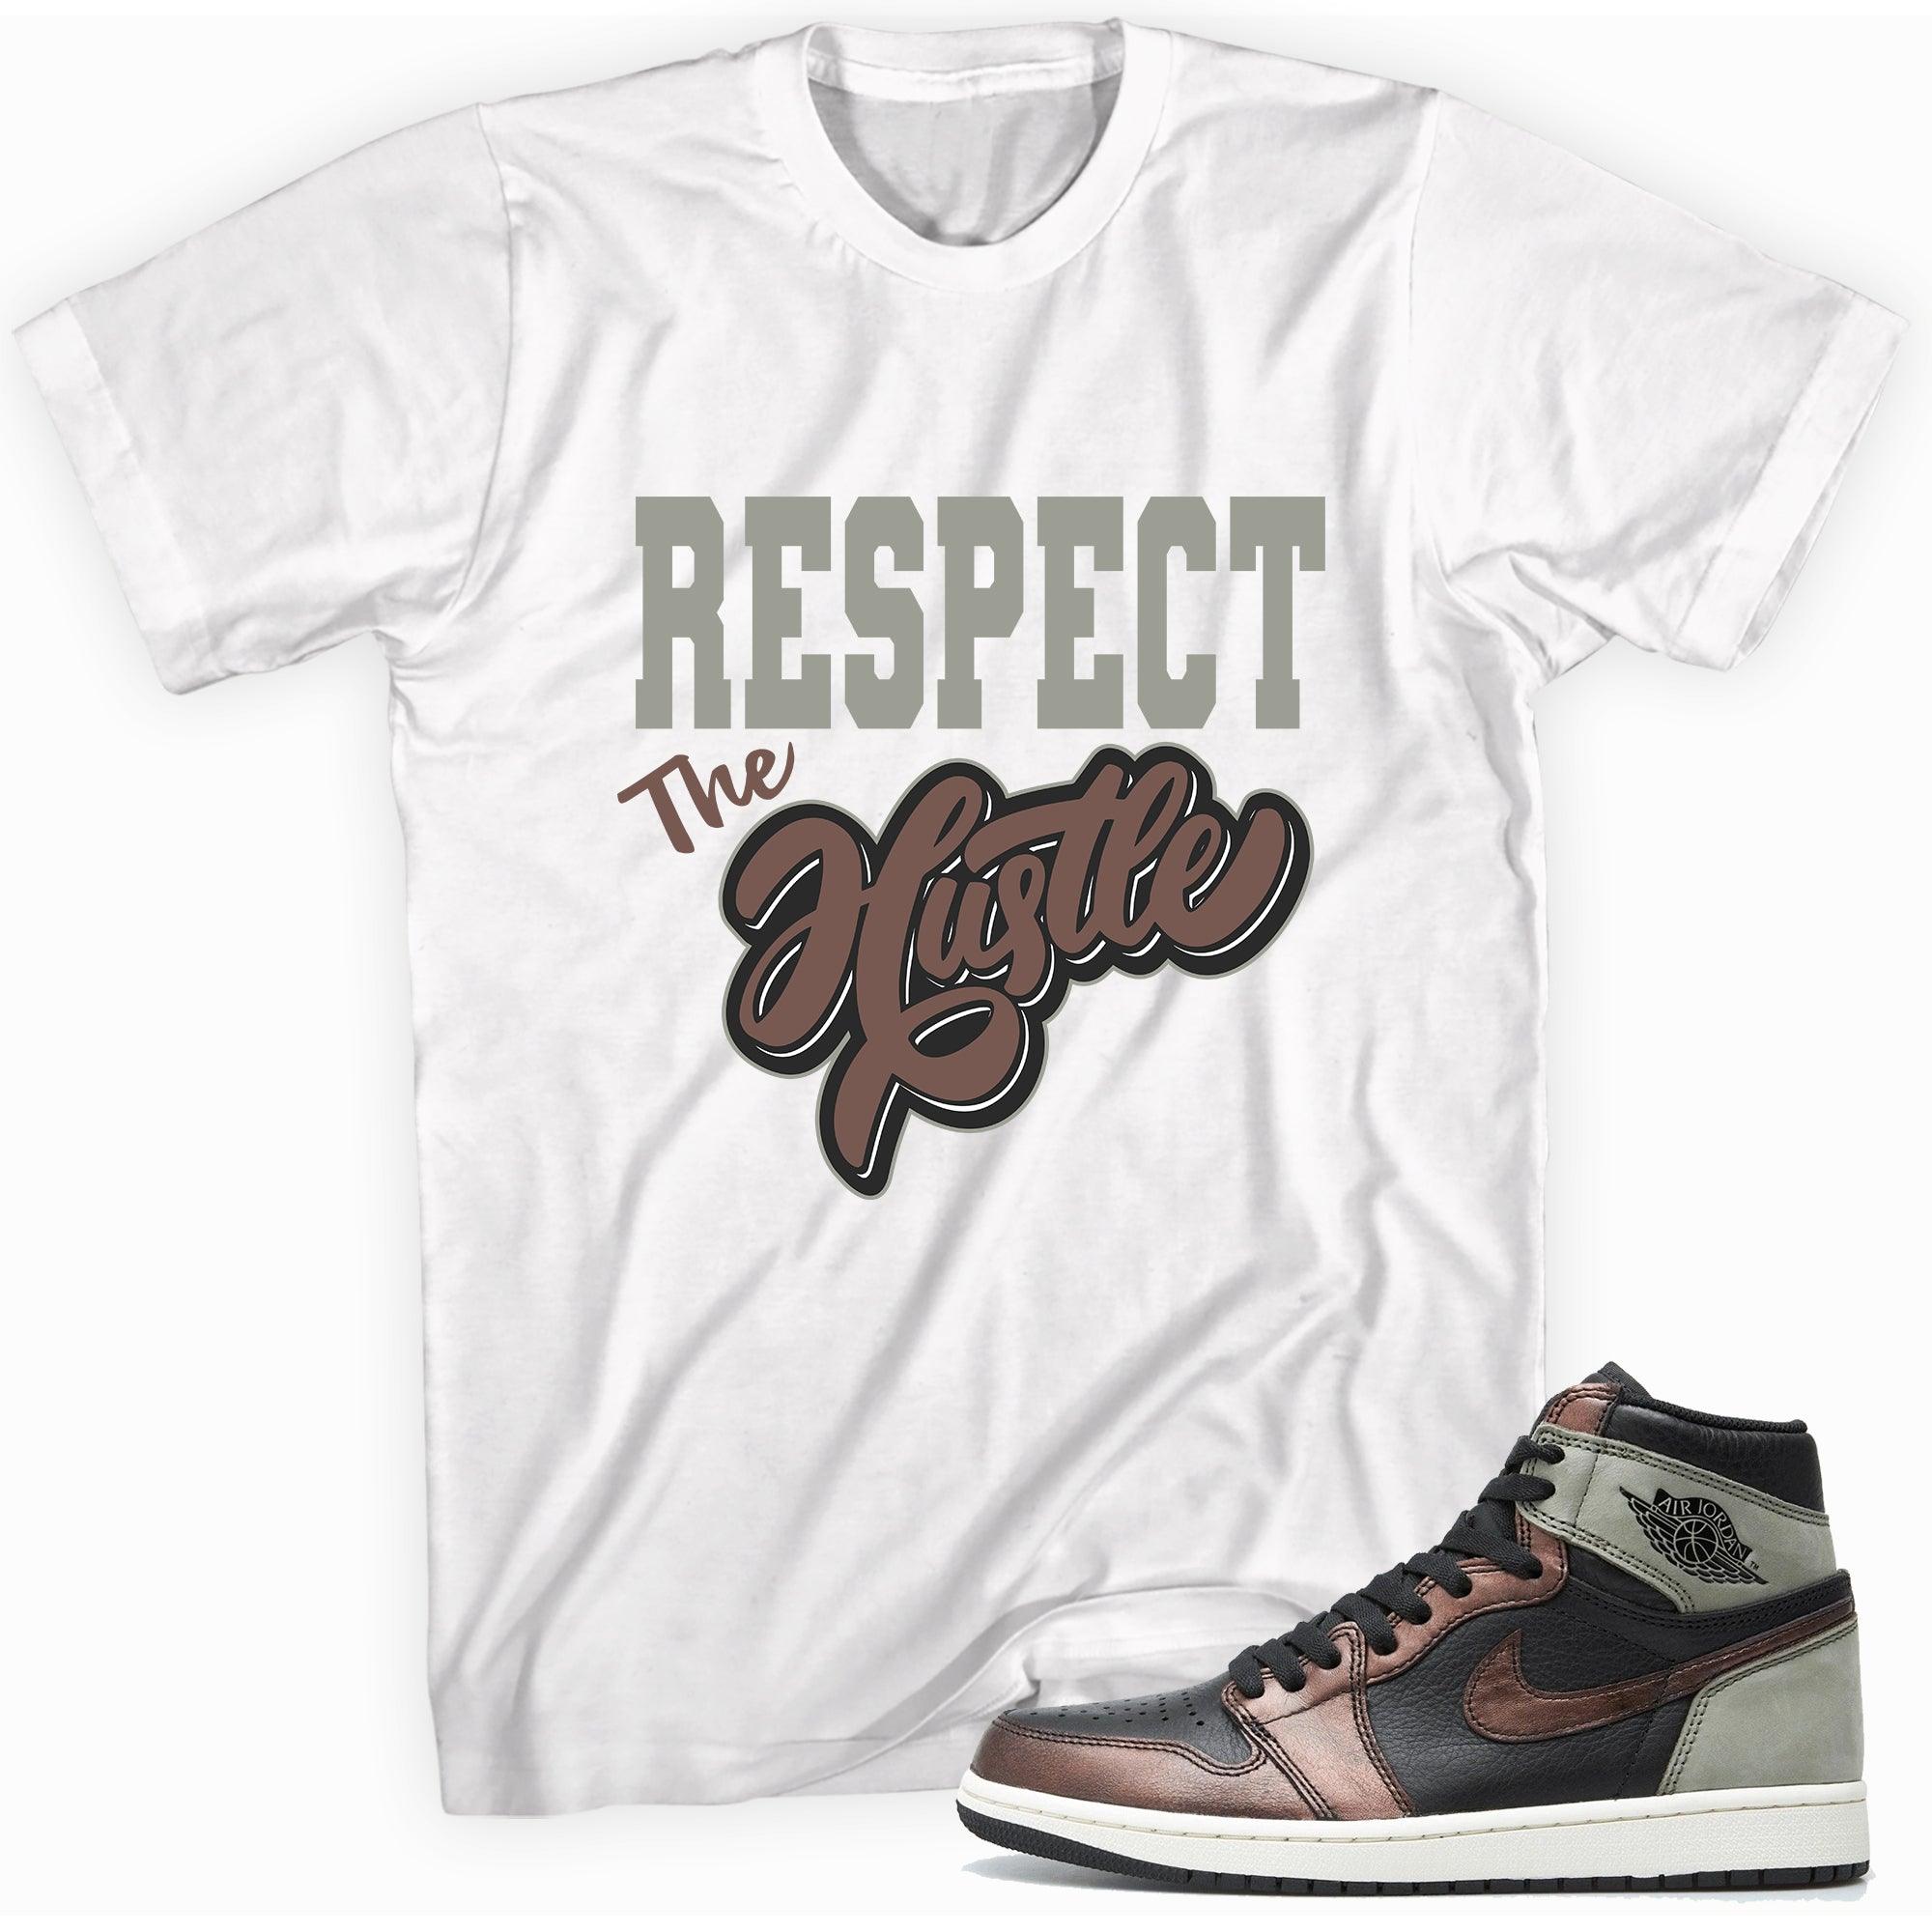 Respect The Hustle Shirt AJ 1s Patina photo